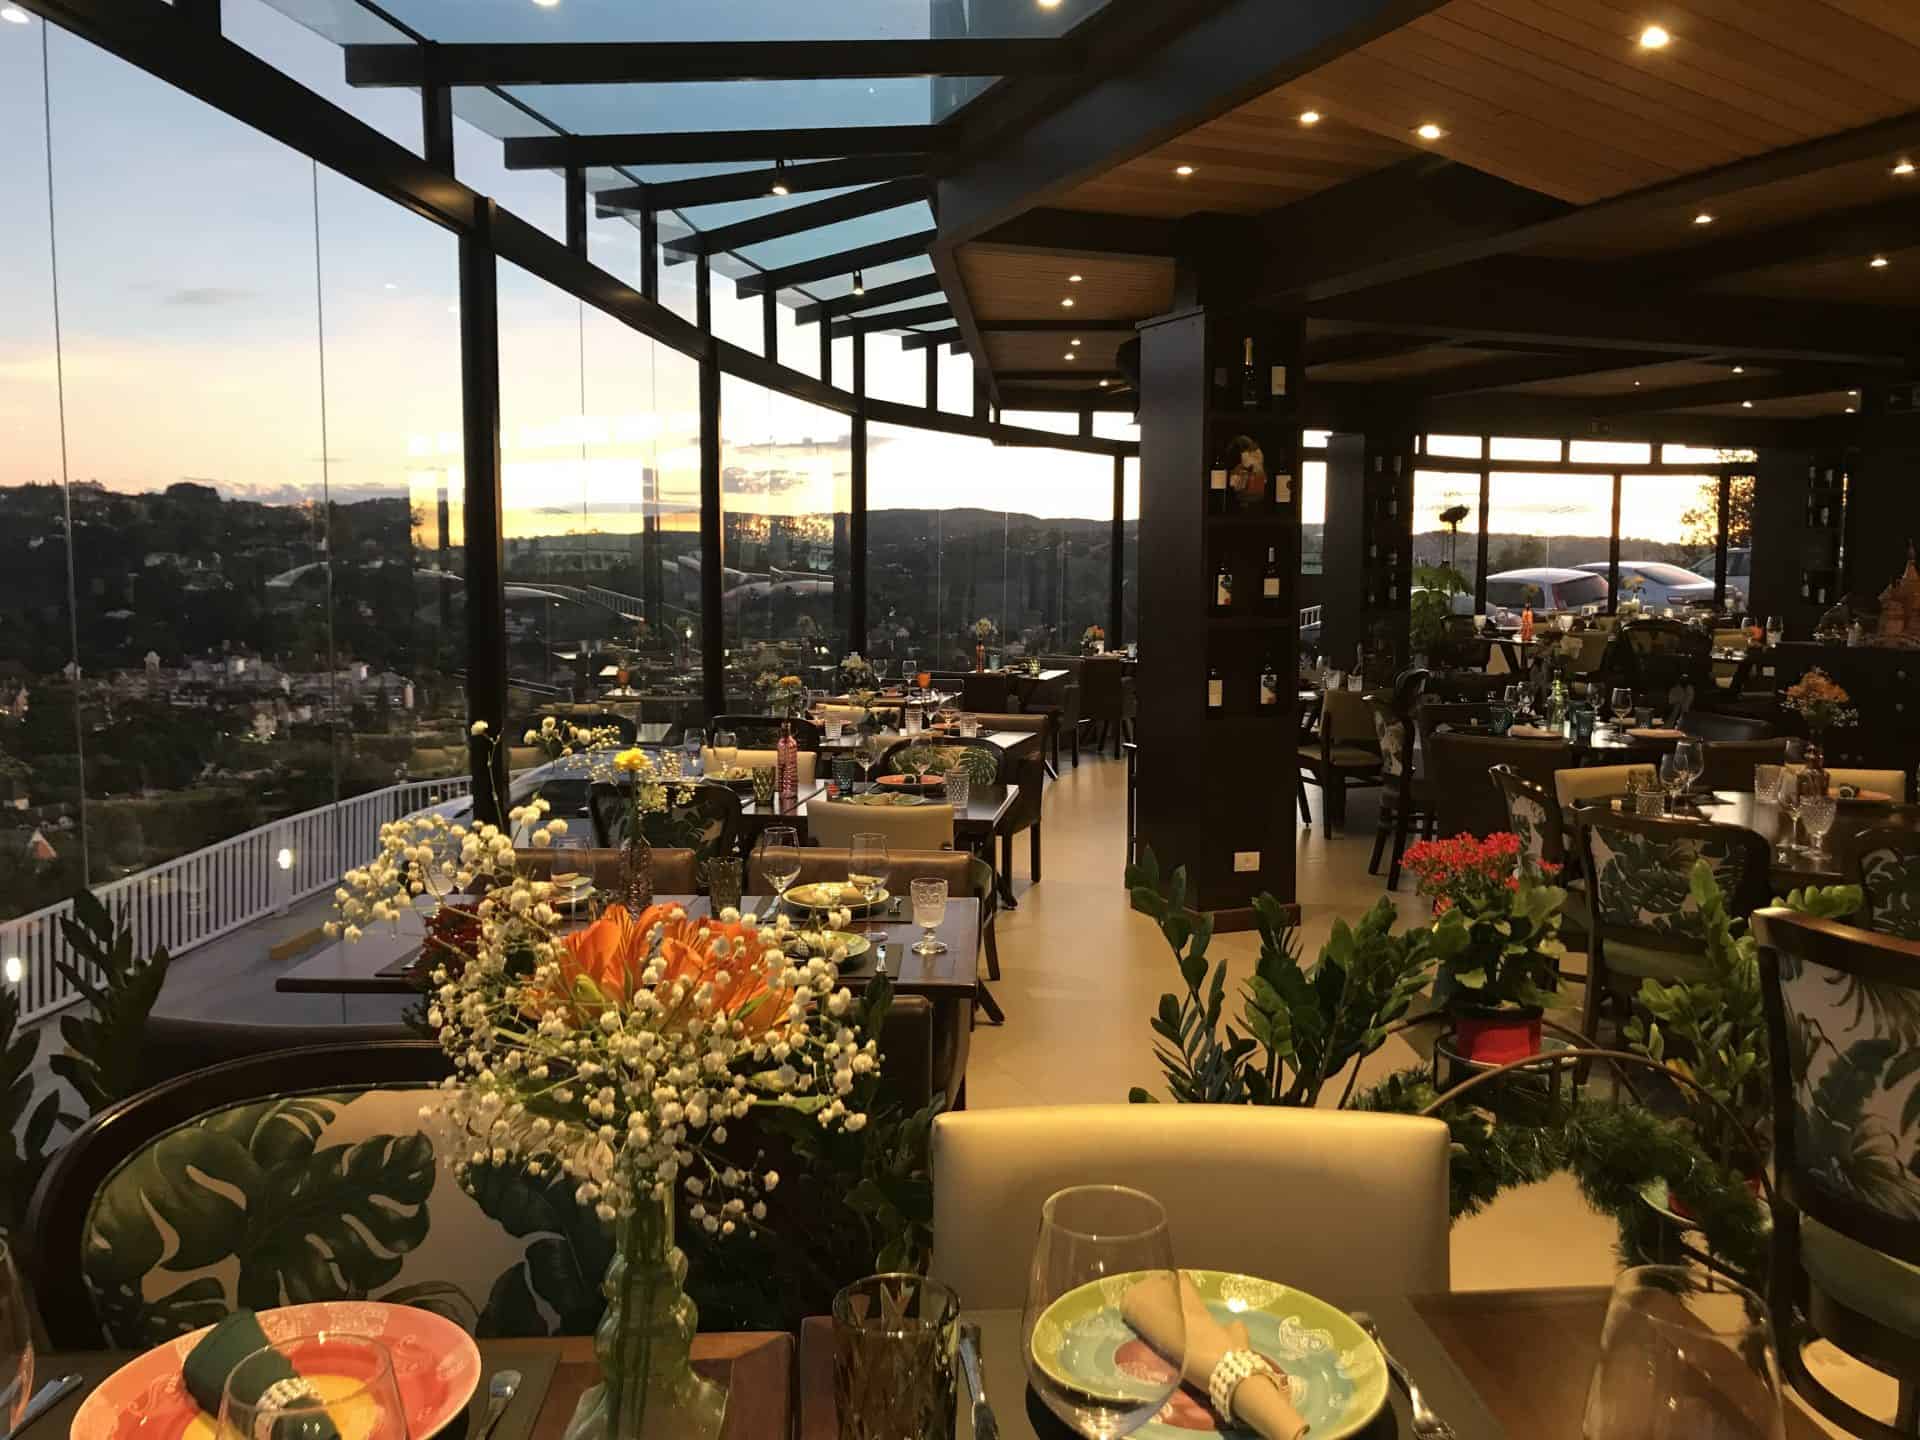 Restaurante Bella Vista tem alta gastronomia e visão panorâmica de Campos do Jordão